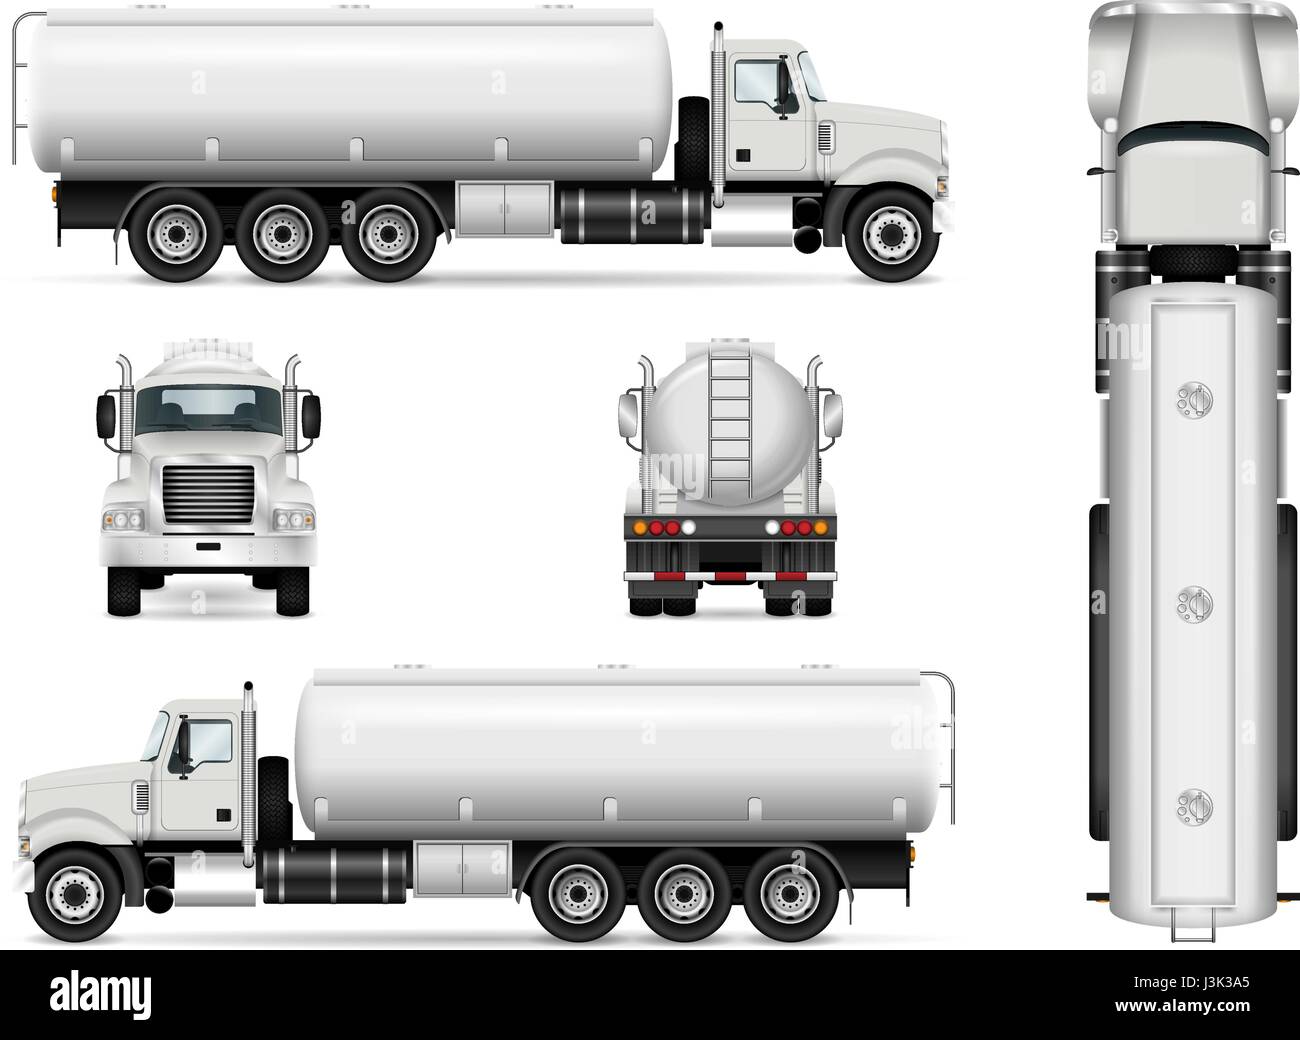 Tanker Truck Vektor Vorlage für Auto, branding und Werbung. Isolierte Tanker Auto auf weiß gesetzt. Alle Schichten und Gruppen gut organisiert für die einfache Bearbeitung Stock Vektor